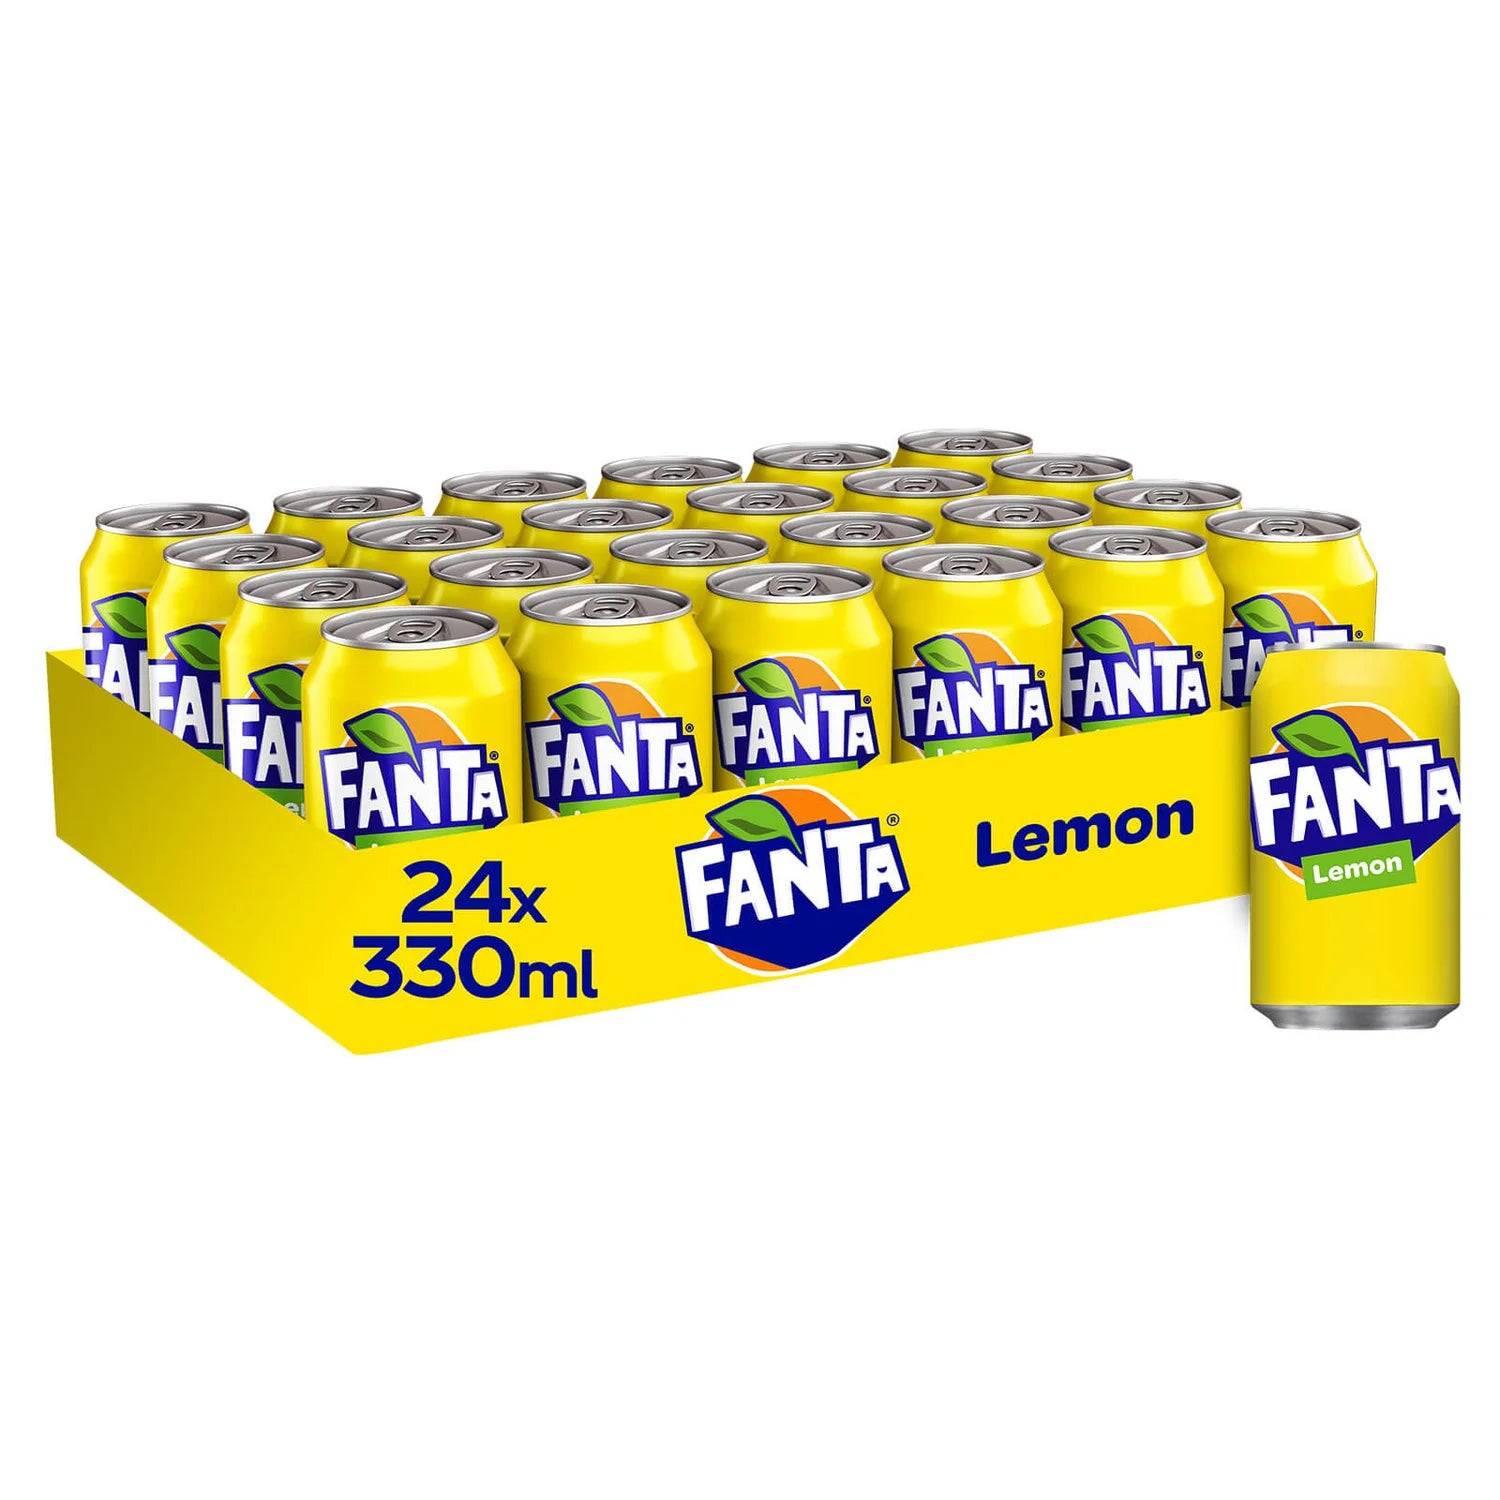 Fanta Lemon - 330ml - Case of 24